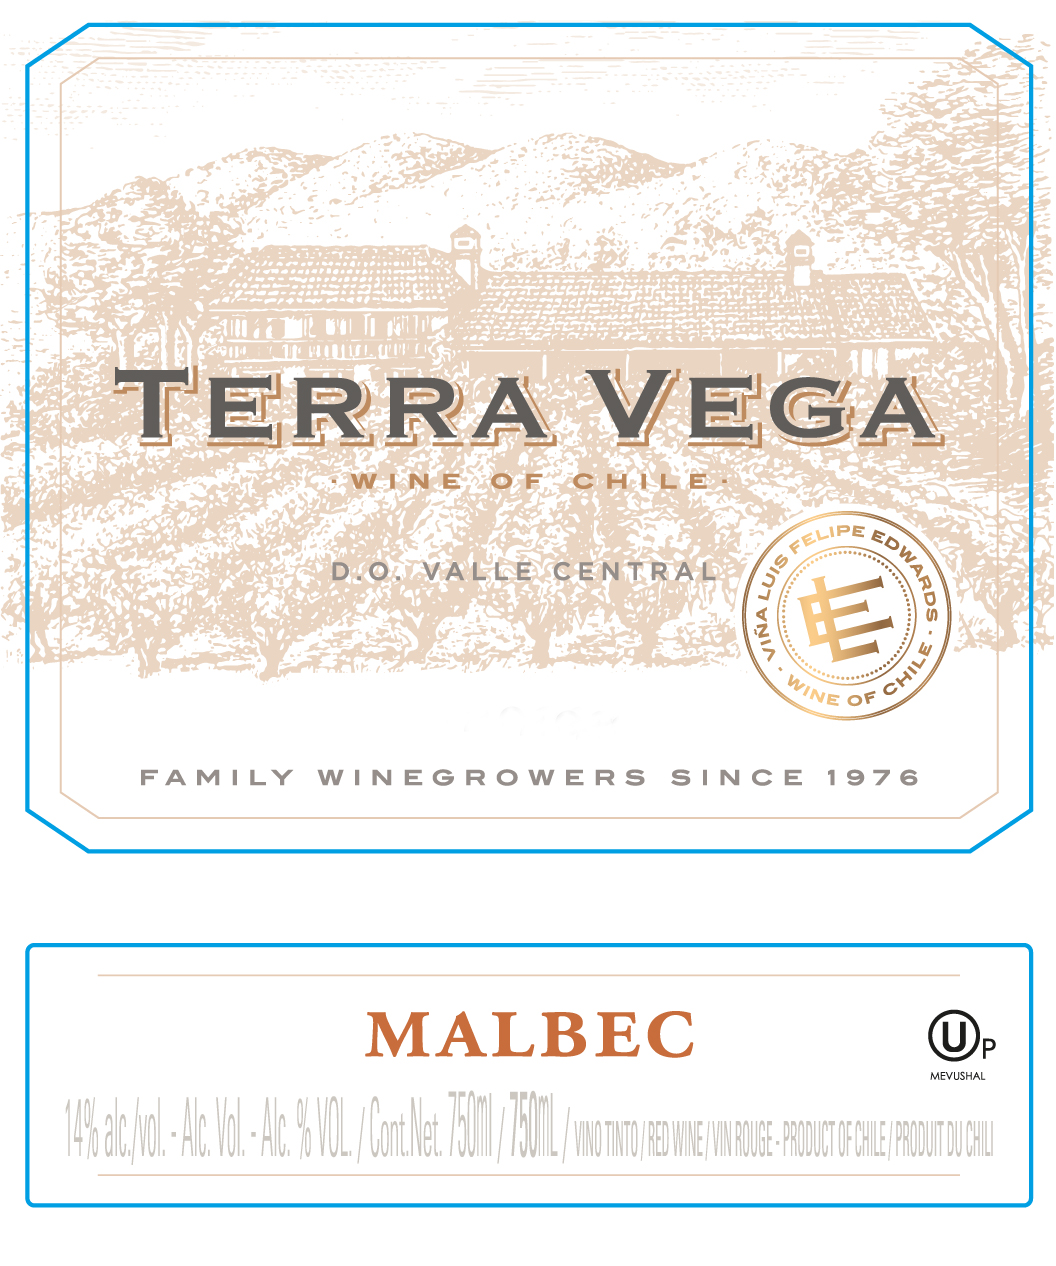 Terra Vega - Malbec label